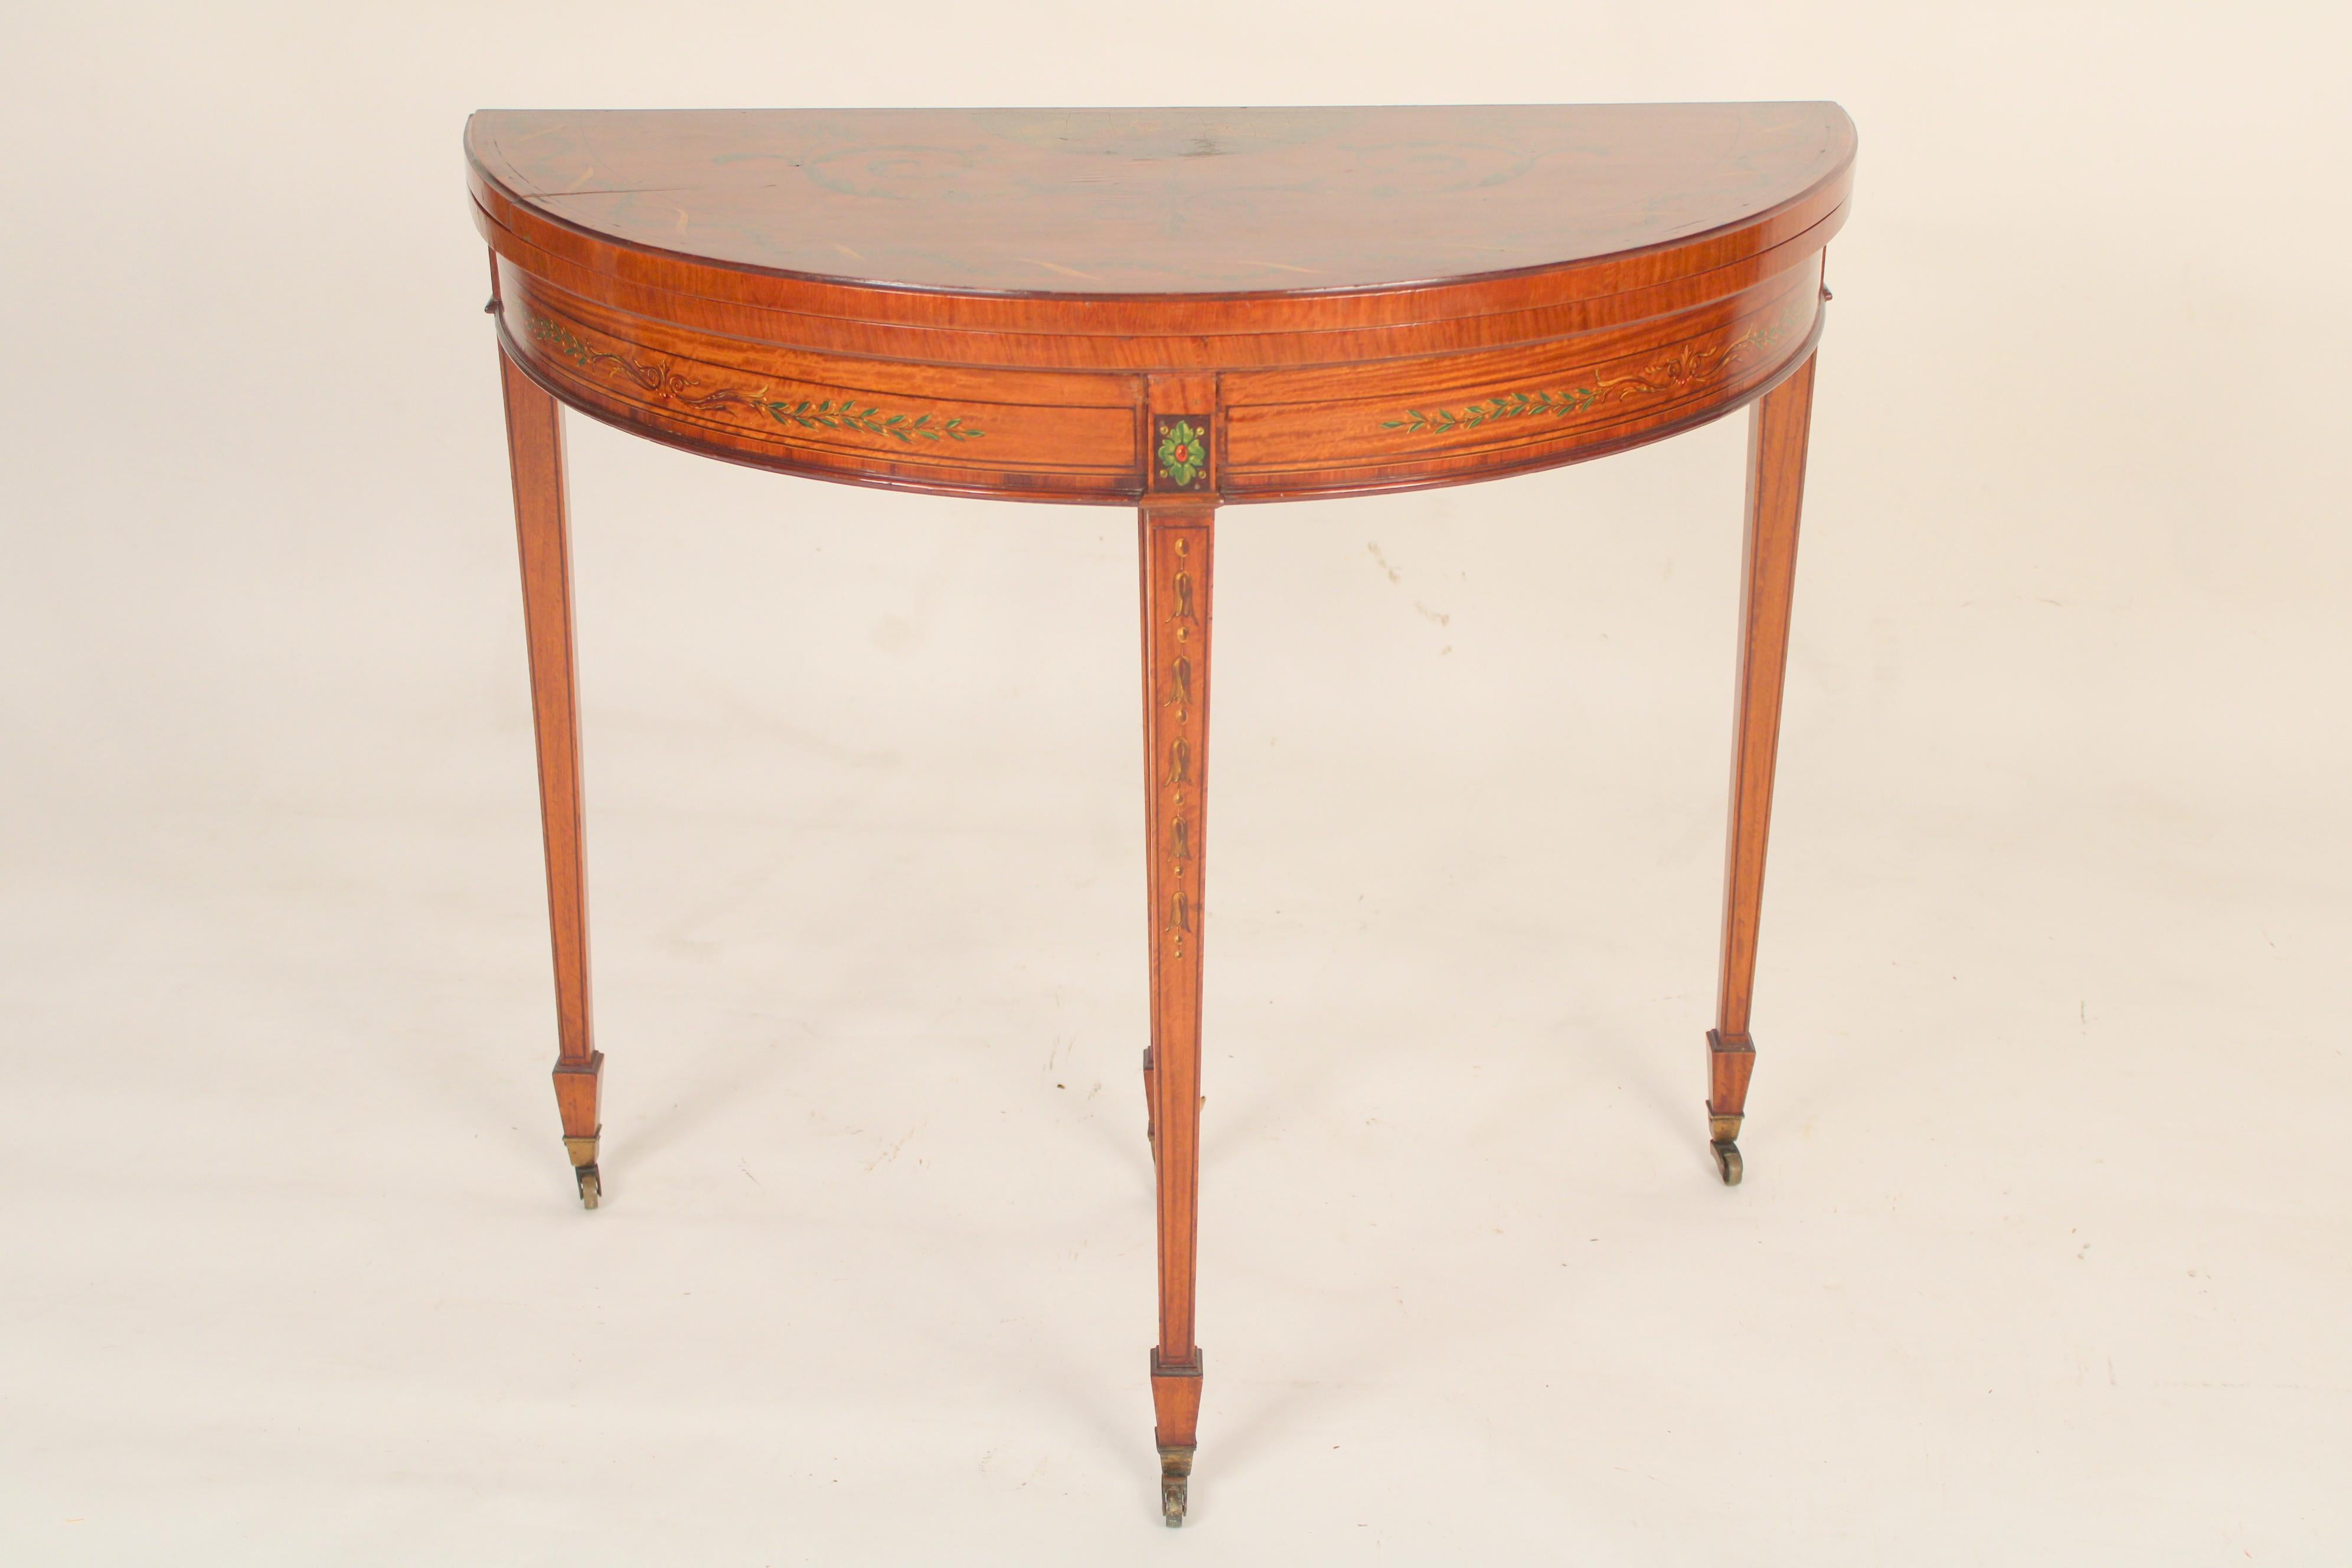 Englischer edwardianischer Demi-Lune-Tisch aus satiniertem Holz, um 1900. Der Deckel der Demi Lune ist mit einer Gruppe von Amoretten und Ranken bemalt. Der Fries ist mit wallenden Ranken bemalt. Die quadratischen, konischen Beine sind mit